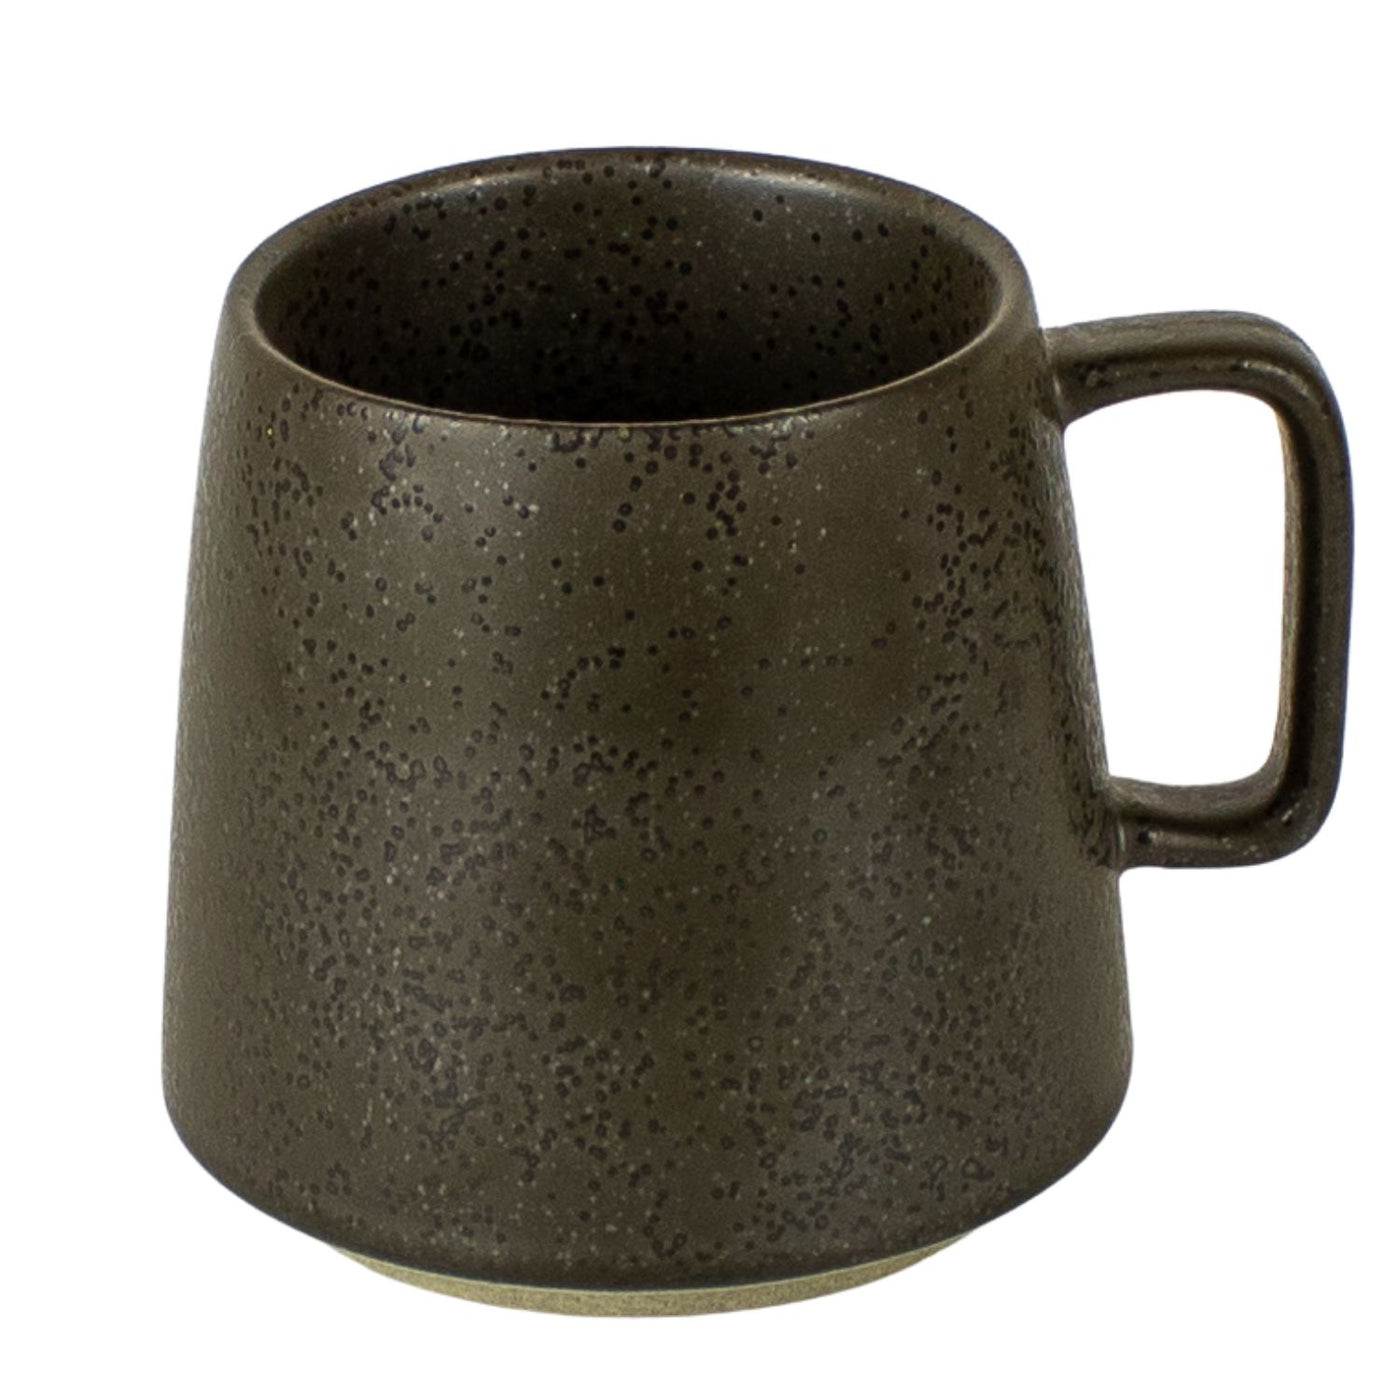 Japanese Style Handmade Stoneware 12 oz Mug Black